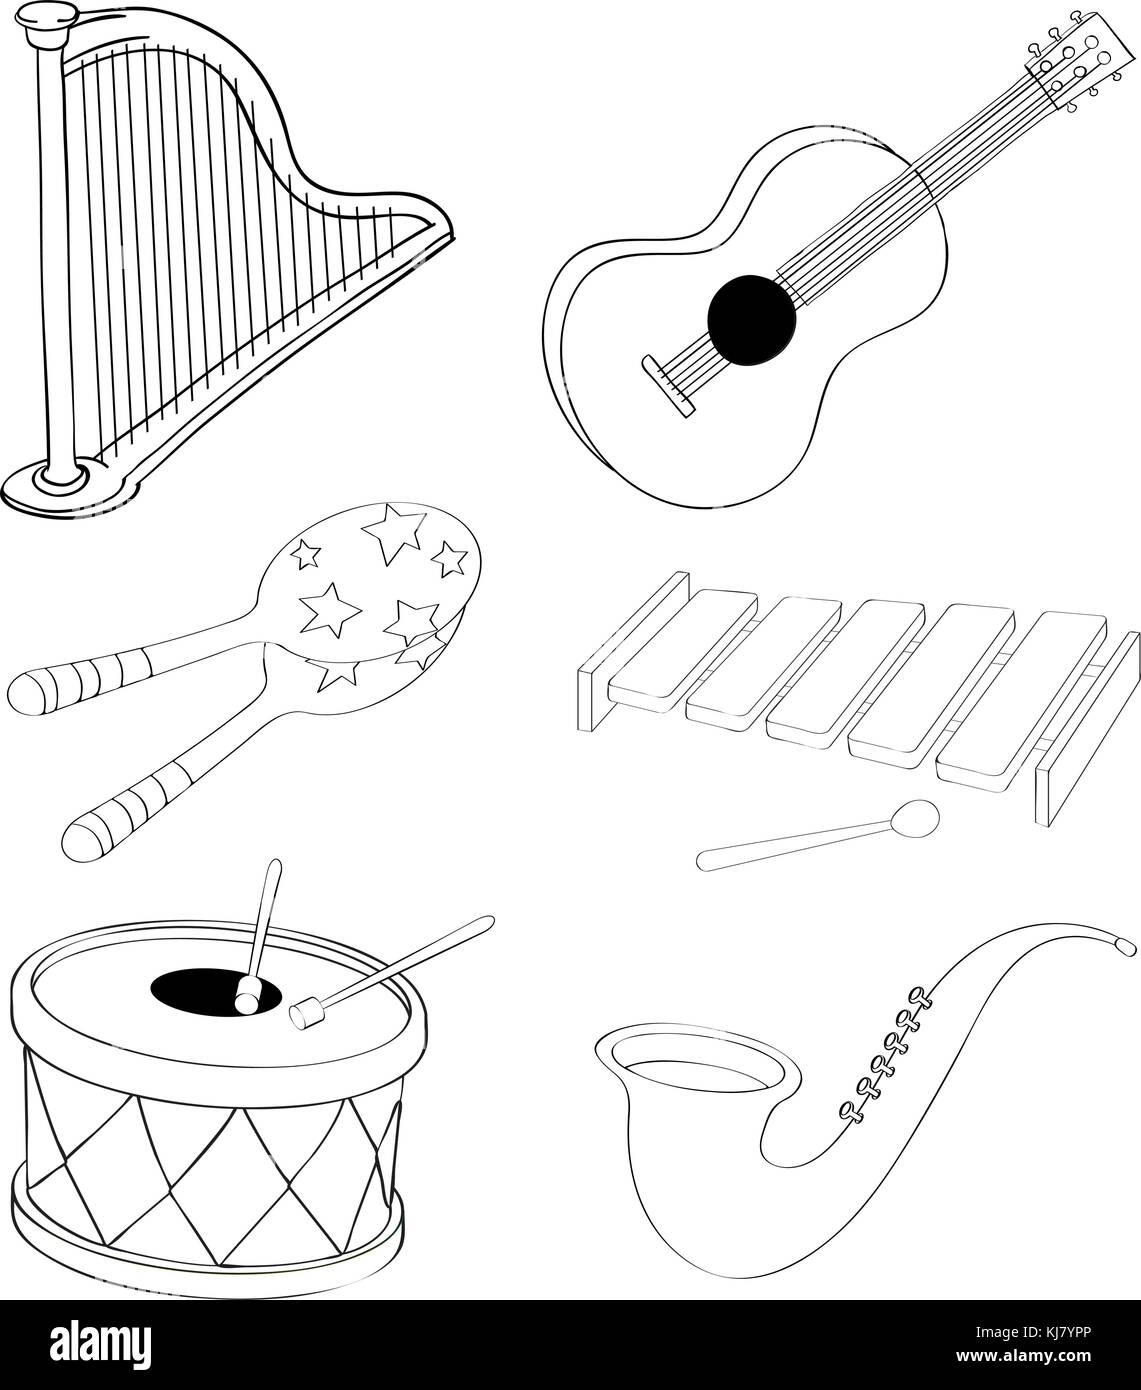 Обводка музыкальные инструменты